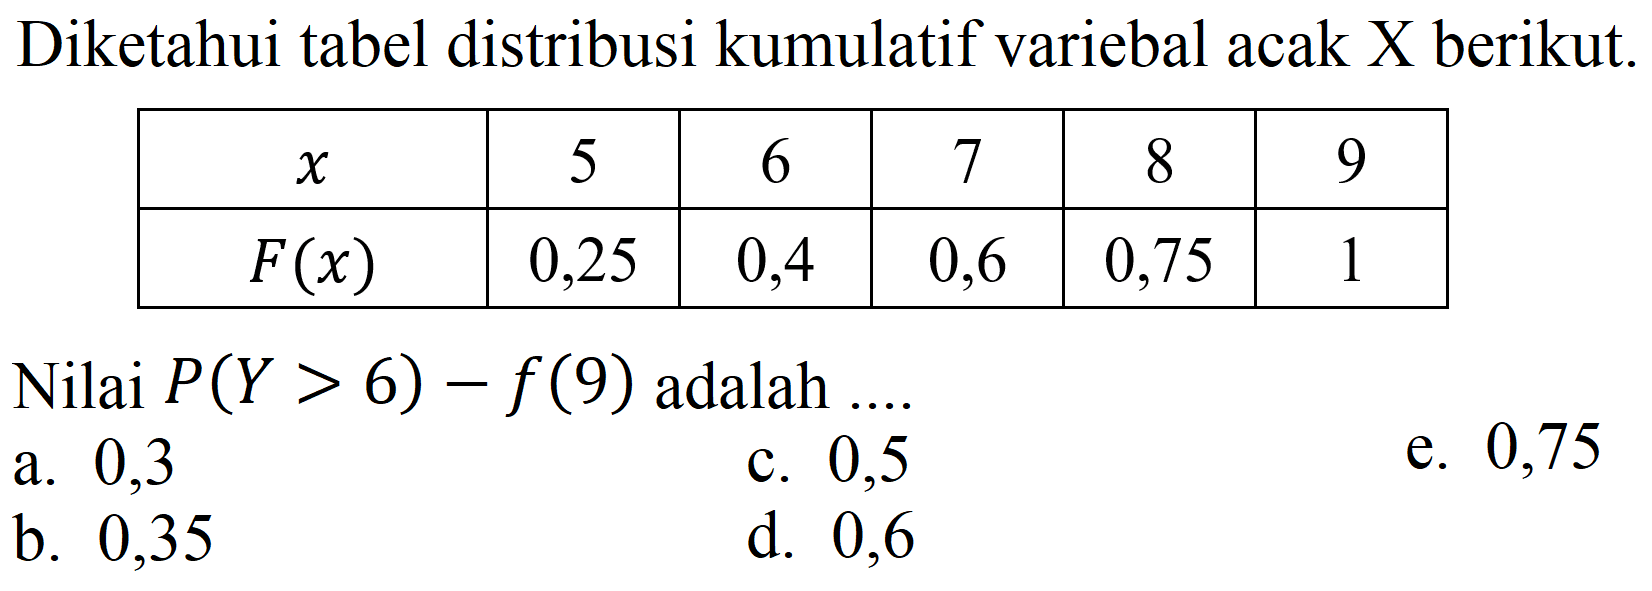 Diketahui tabel distribusi kumulatif variebal acak  X  berikut.

 x   5  6  7  8  9 
 F(x)   0,25  0,4  0,6  0,75  1 


Nilai  P(Y>6)-f(9)  adalah ....
a. 0,3
c. 0,5
e. 0,75
b. 0,35
d. 0,6